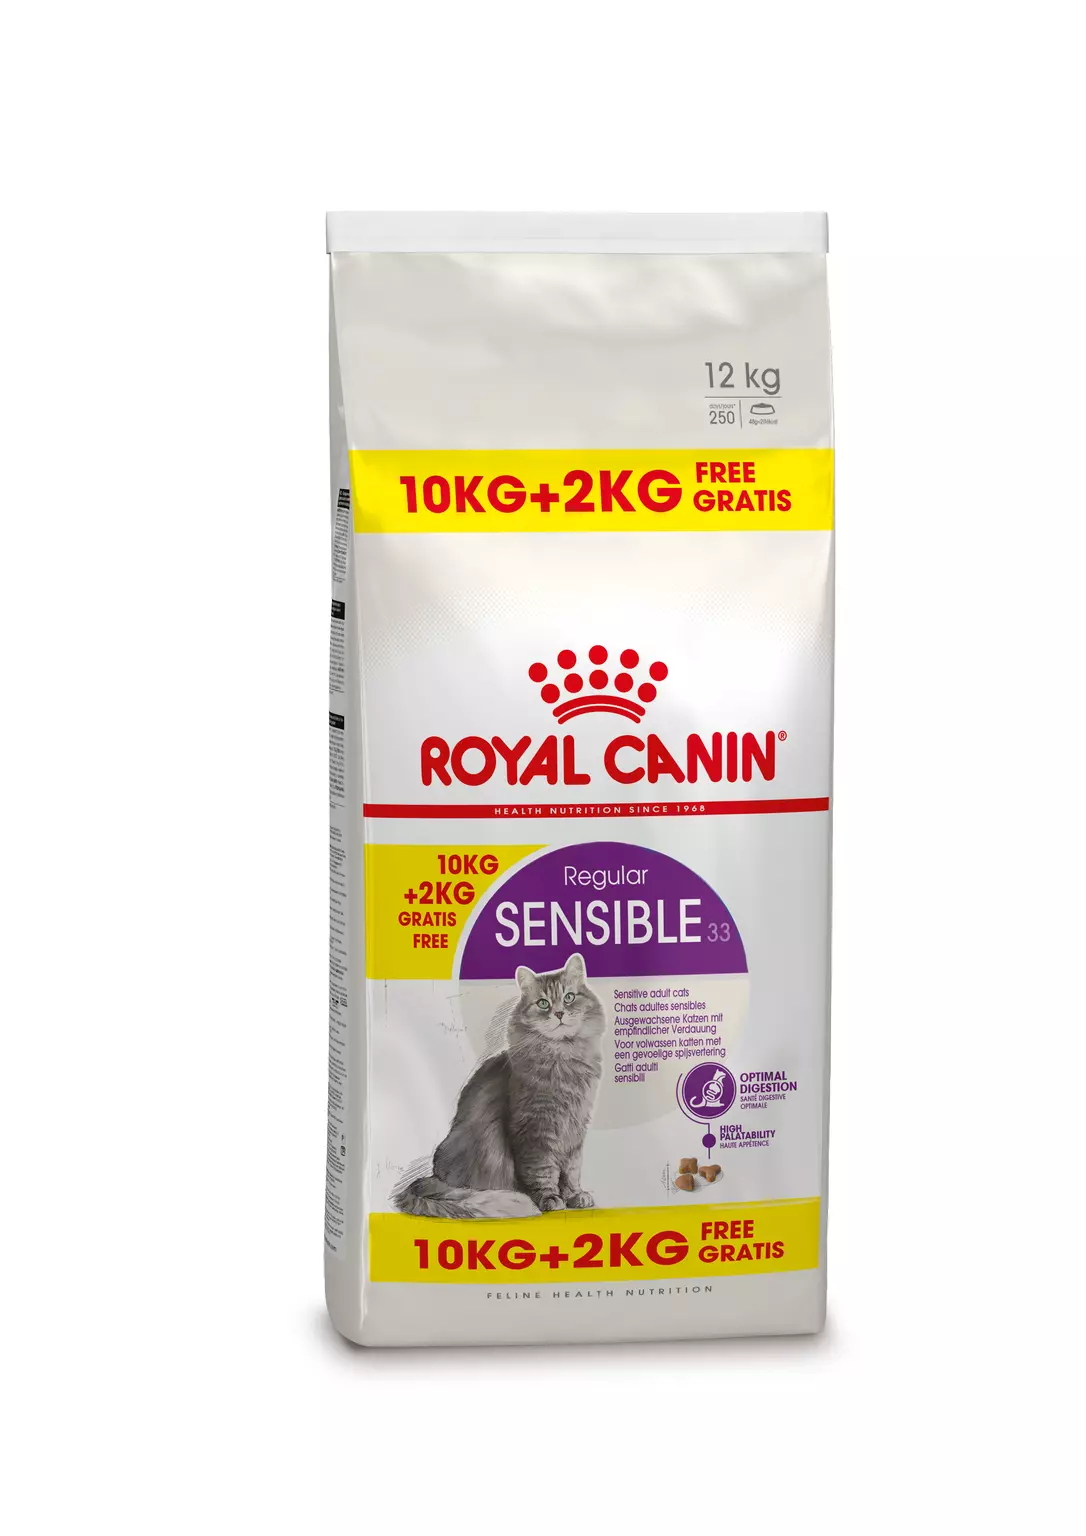 acuut waar dan ook Afdeling Royal Canin sensible 33 regular 10 kg + 2 kg gratis bonusbag - Van Noord's  Dierenvoeders